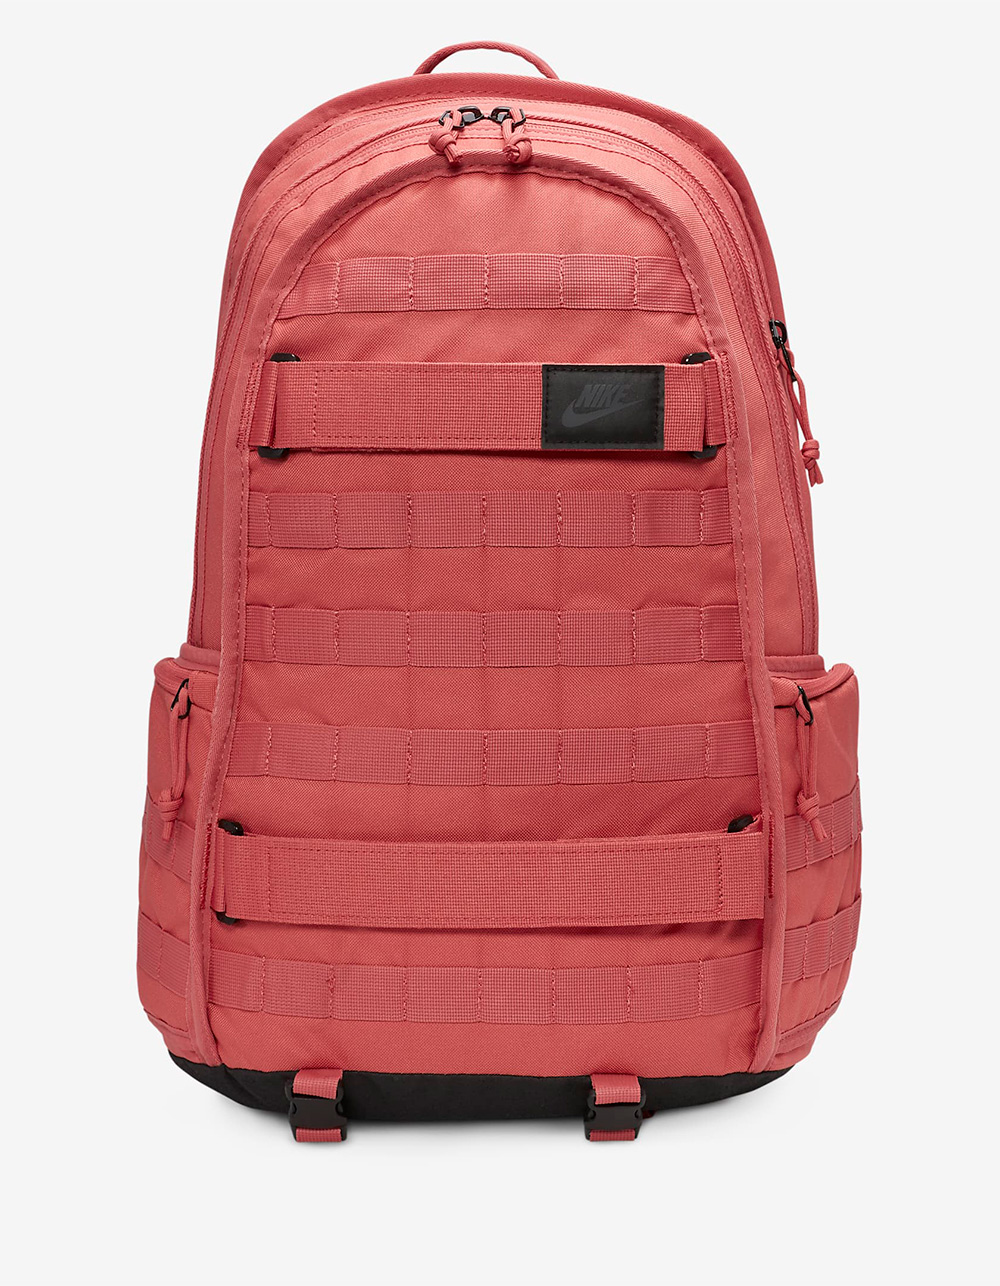 NIKE Sportswear Backpack - RED Tillys